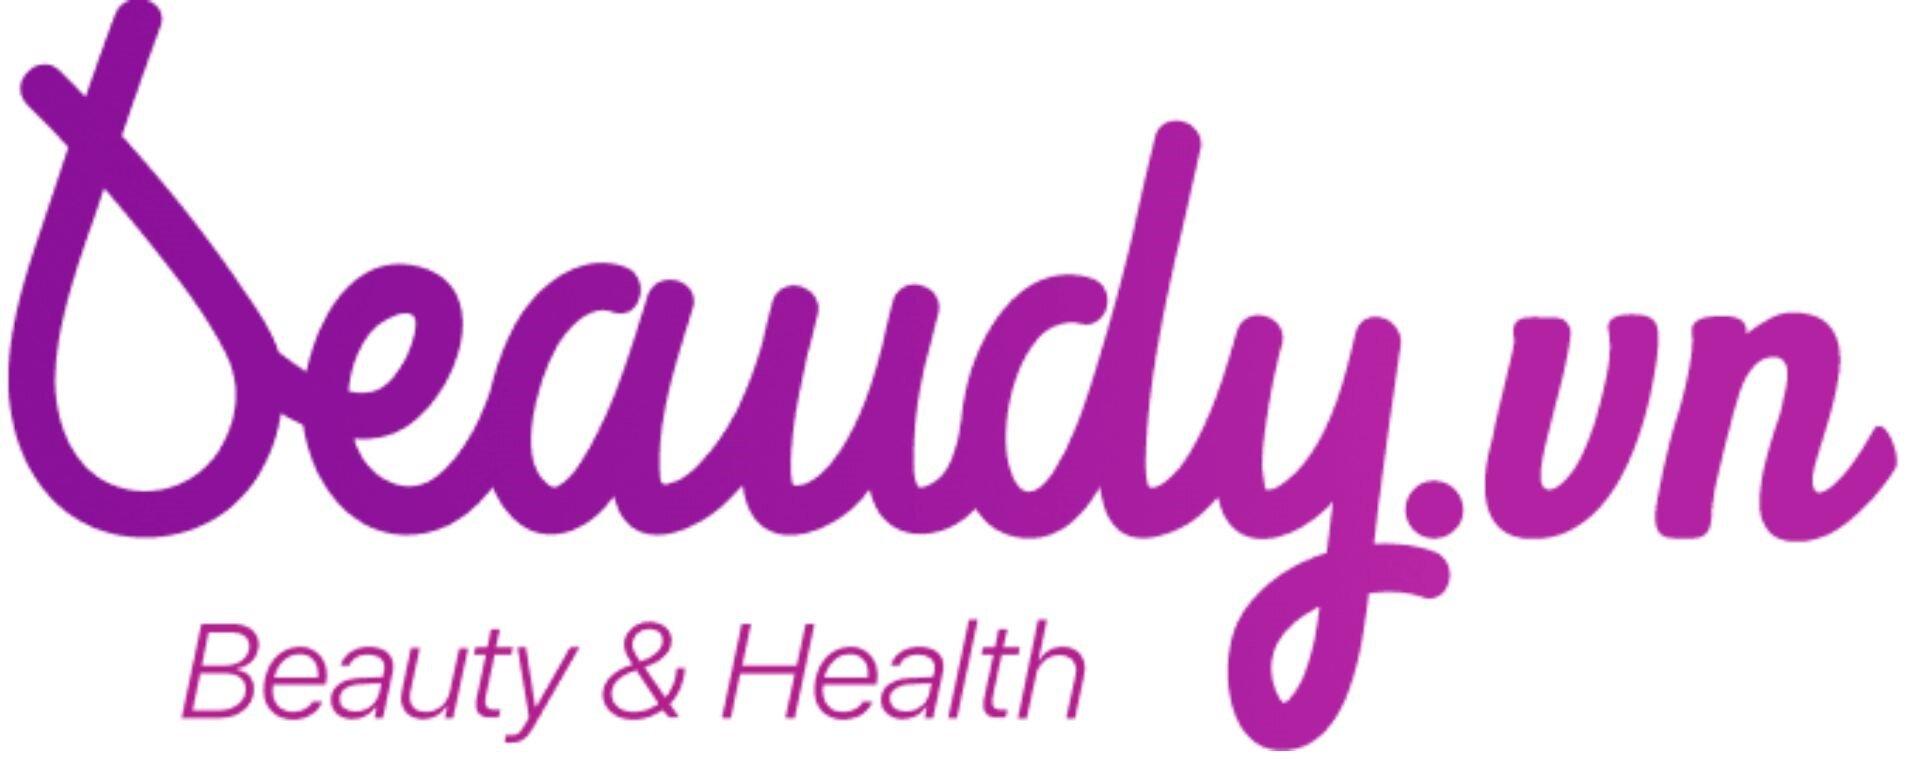 Logo chính thức của Beaudy.vn (Nguồn: Beaudy.vn)